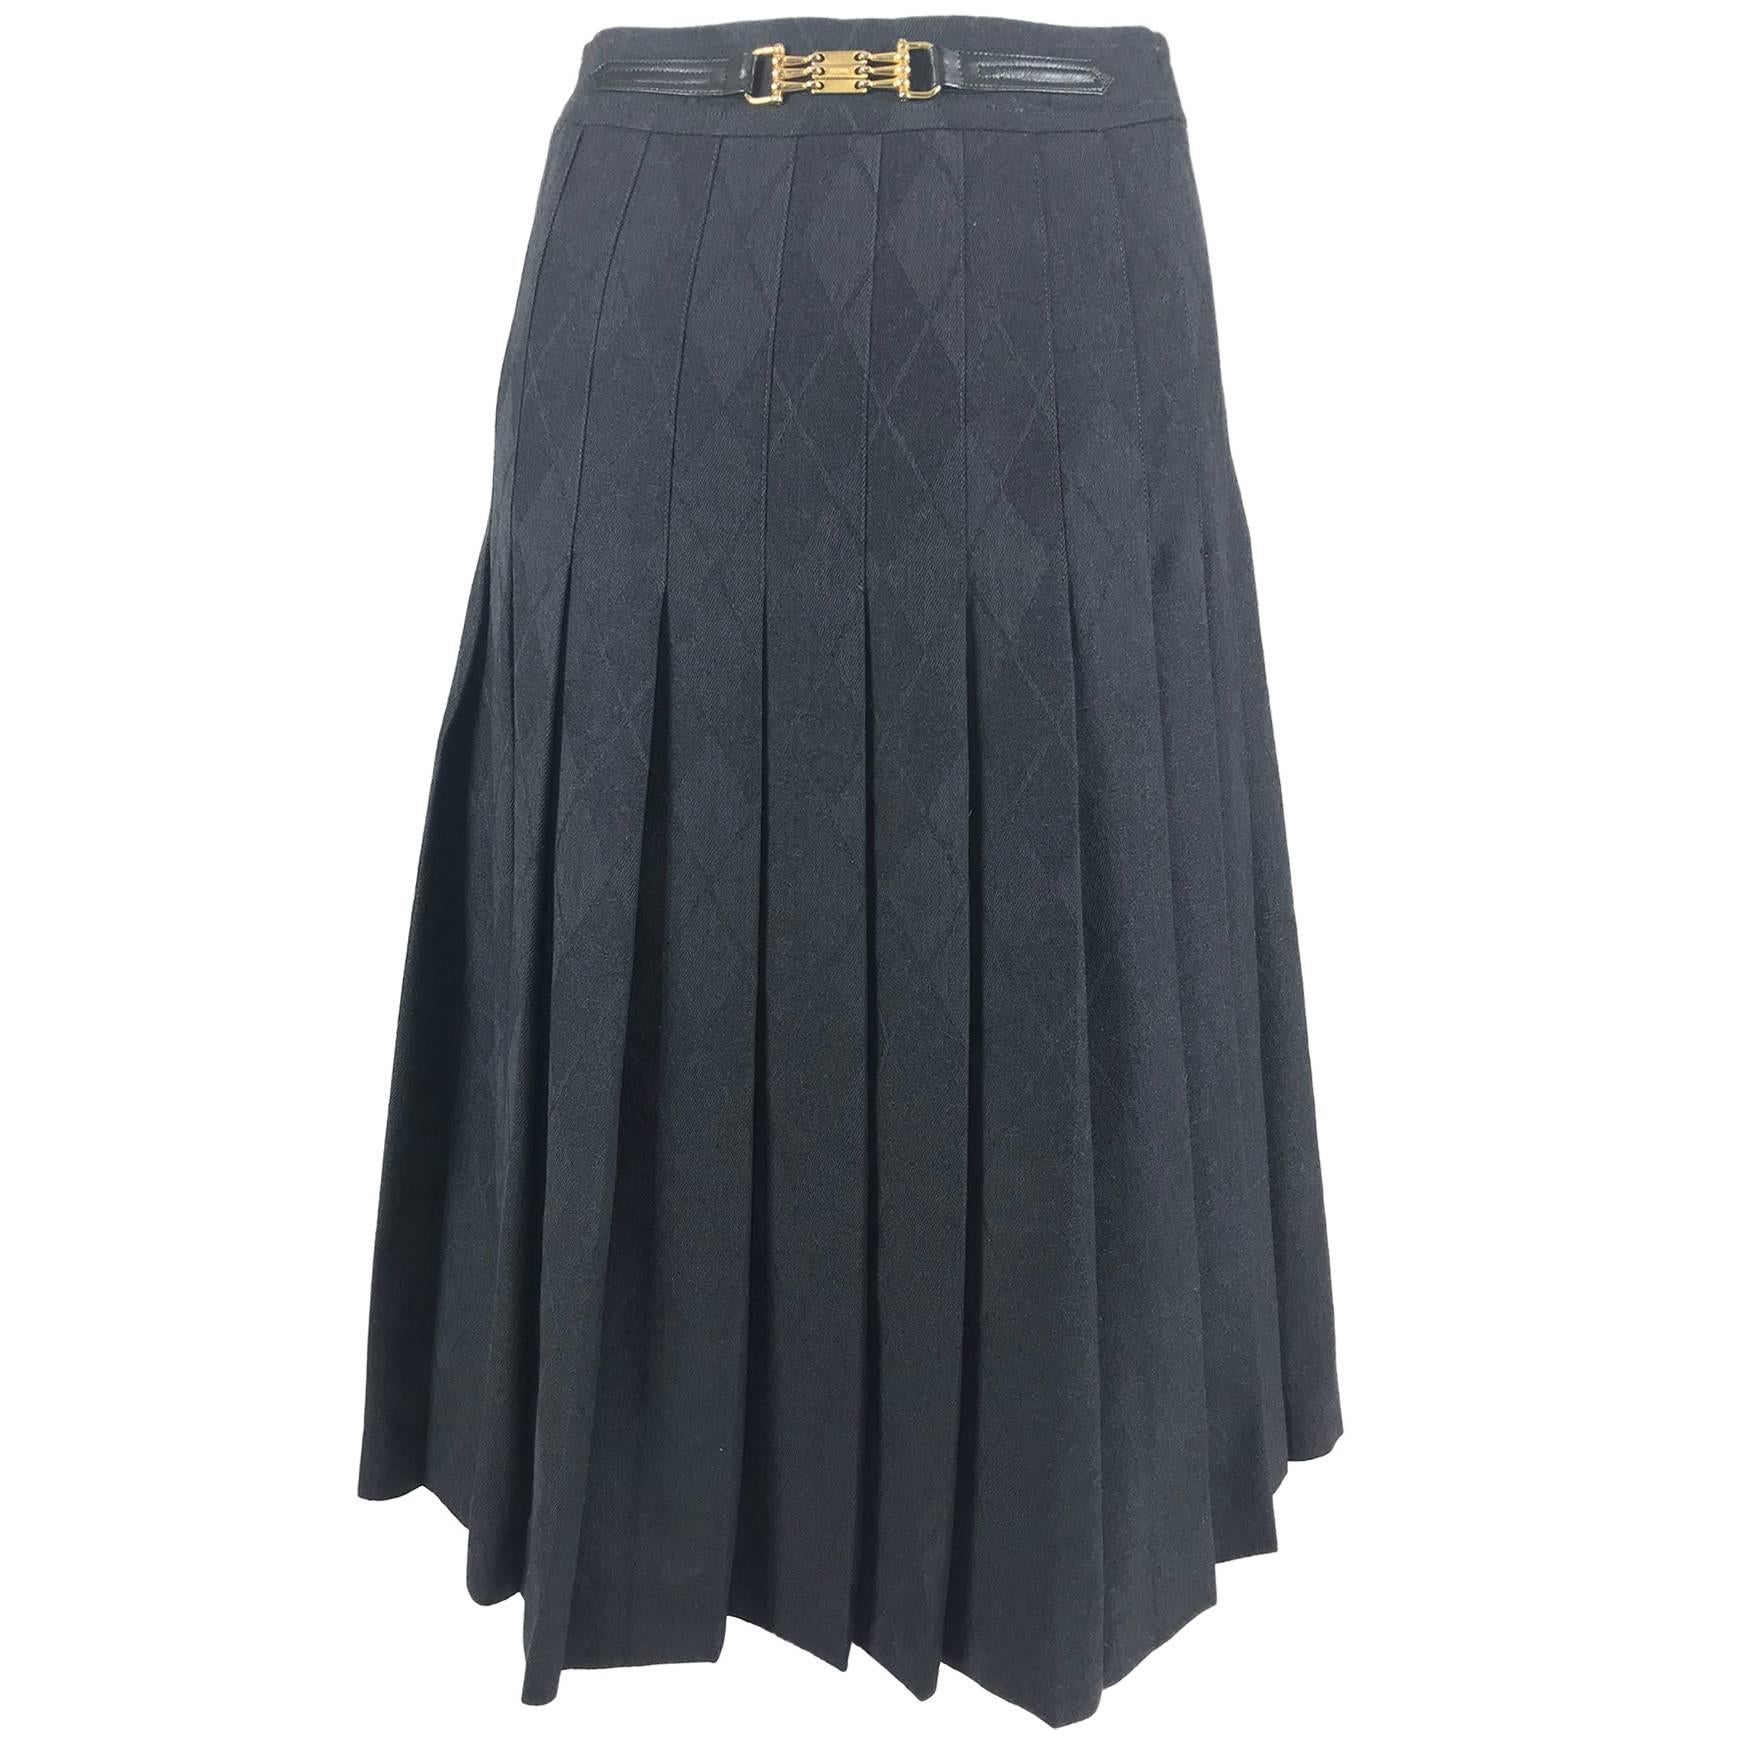 Celine grey wool jacquard pleated skirt 1990s